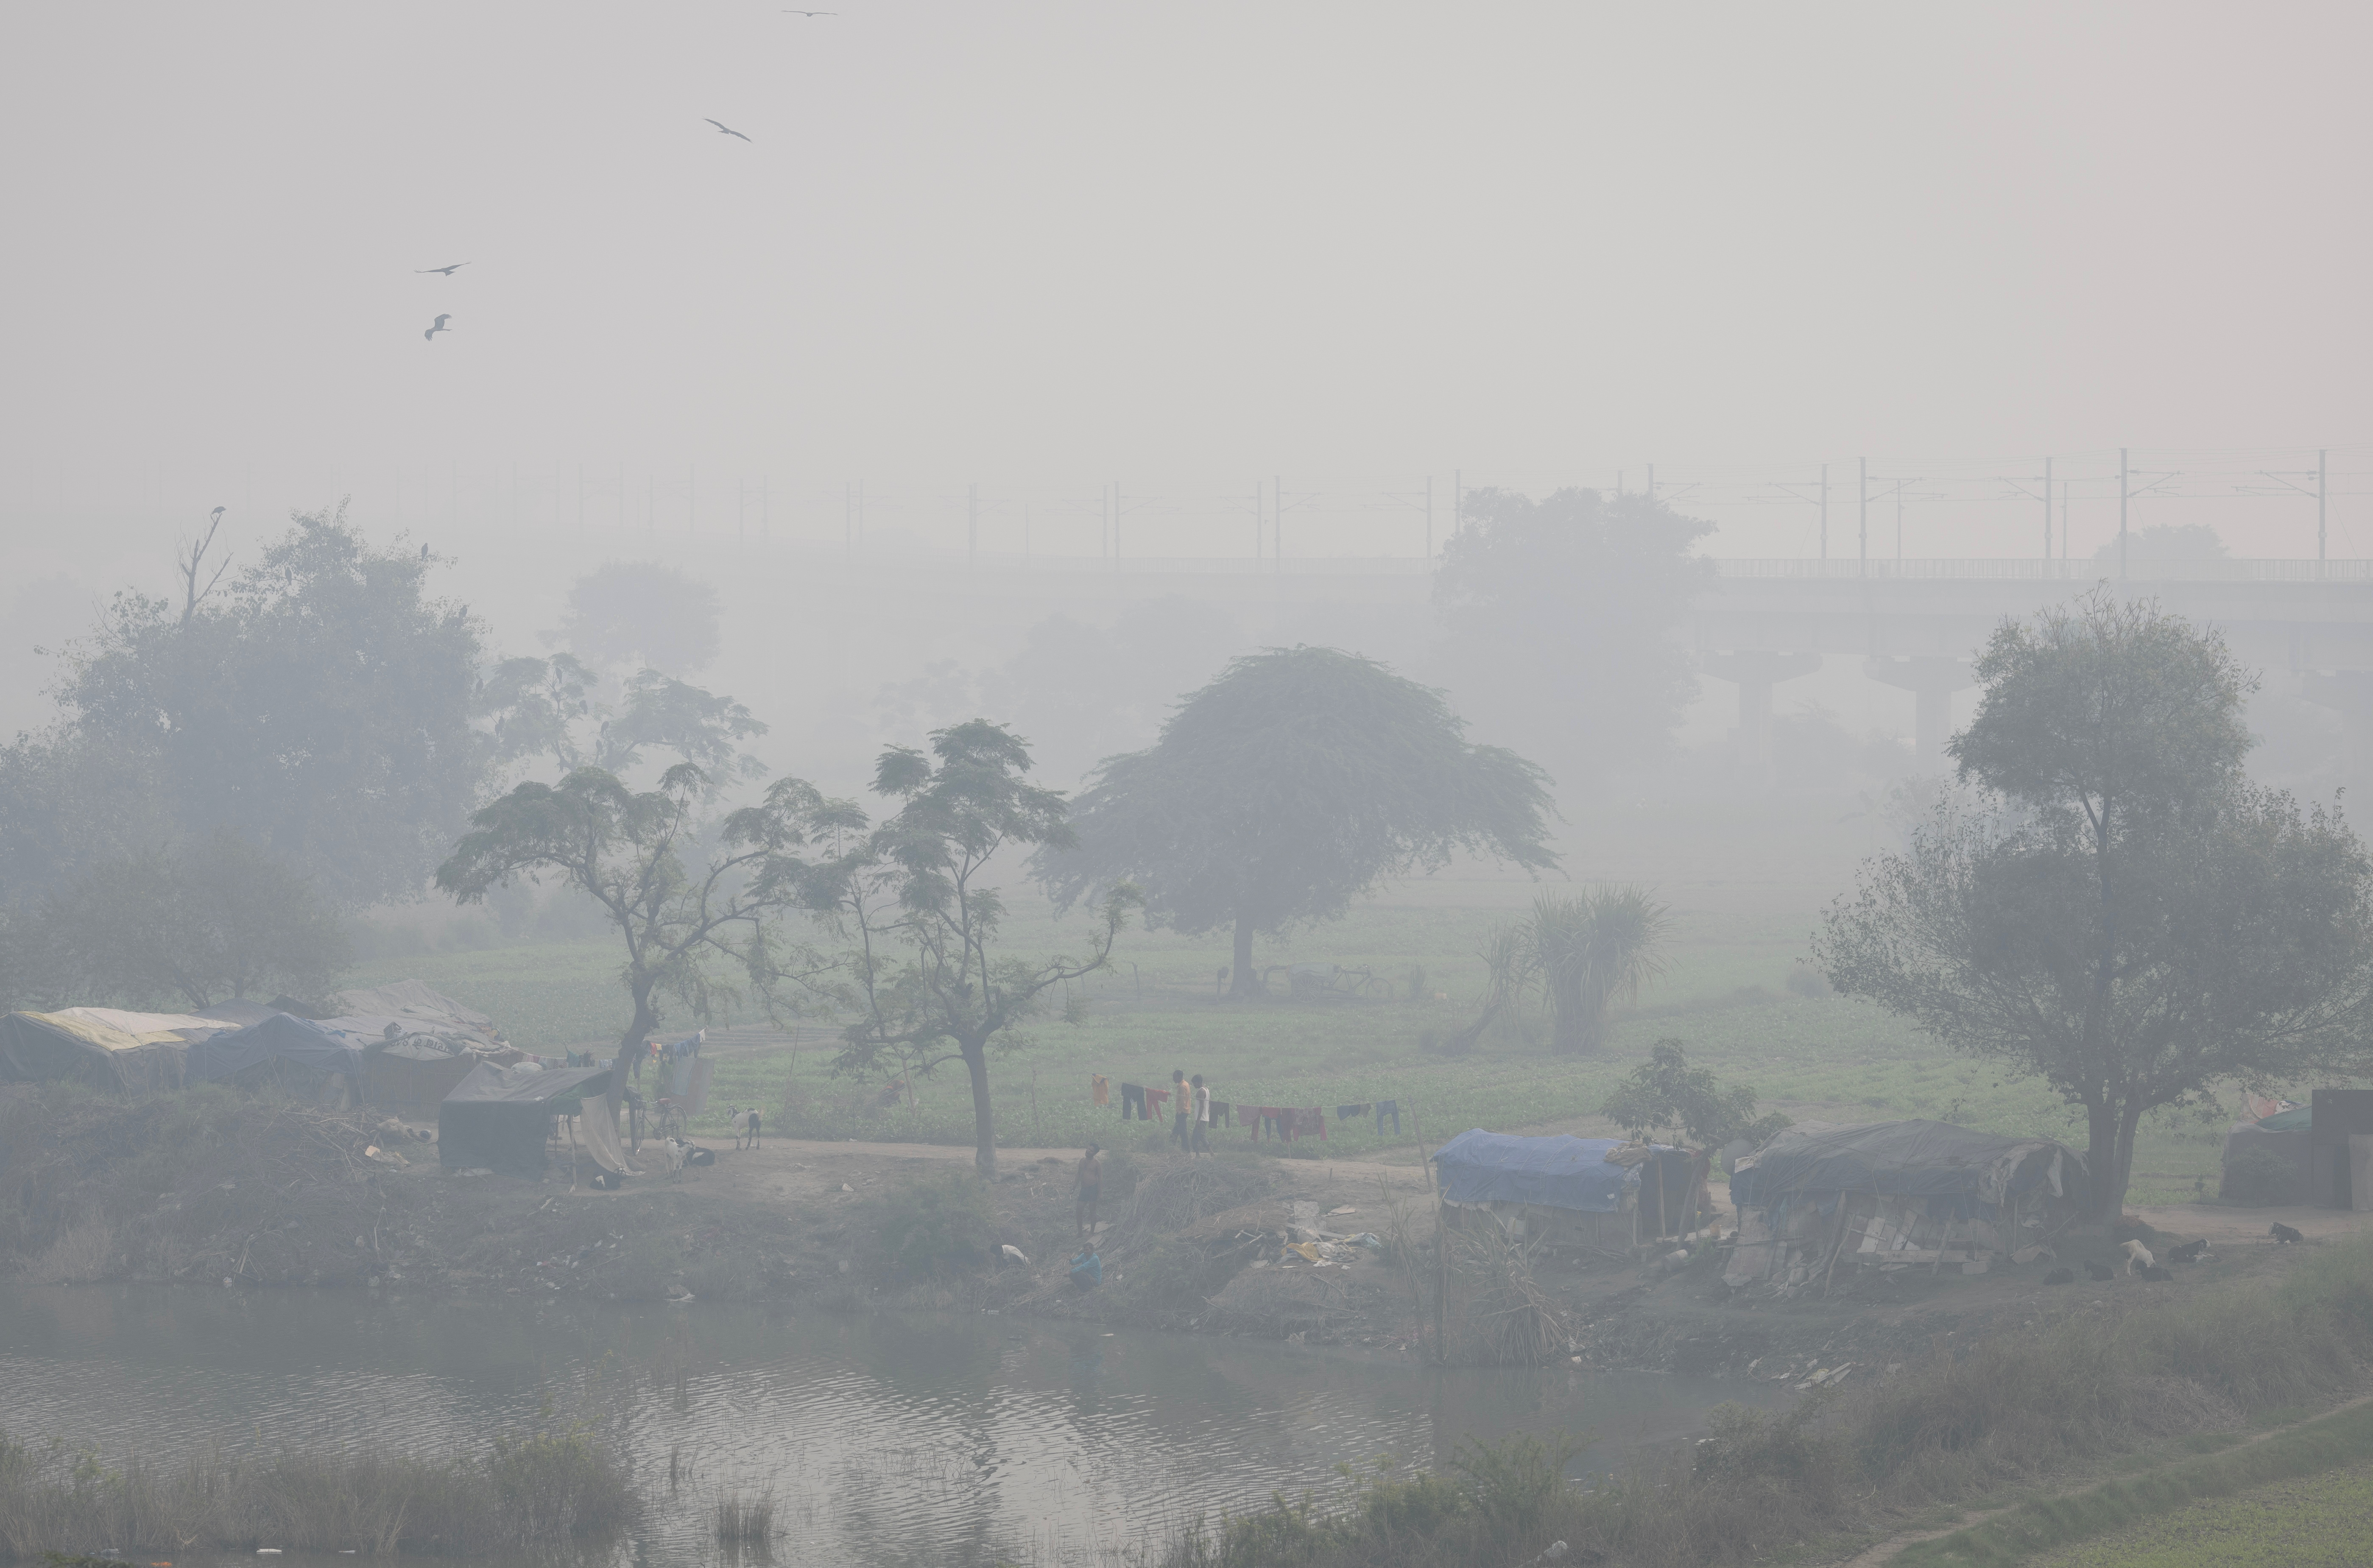 La gente camina a través de la pesada niebla tóxica fuera de sus hogares en el lecho del río Yamuna en Nueva Delhi, India 3 de noviembre de 2022. REUTERS/Adnan Abidi